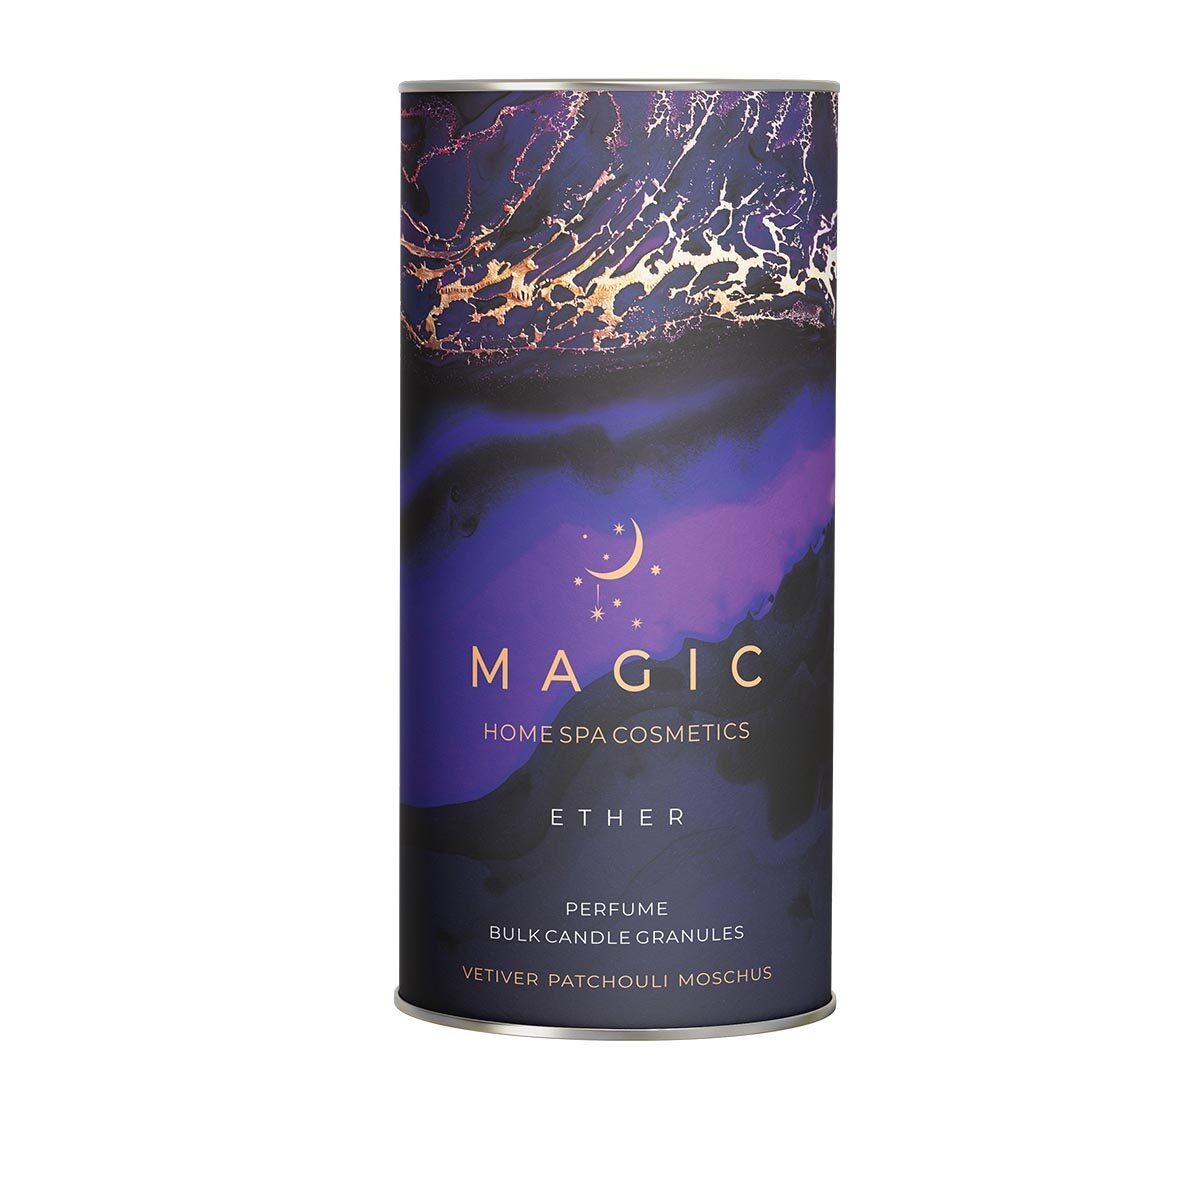 насыпная свеча в гранулах candle magic деревянный подсвечник оранжевый воск Свеча-парфюм гранулированная Magic 5 Elements Ether 1,2 кг